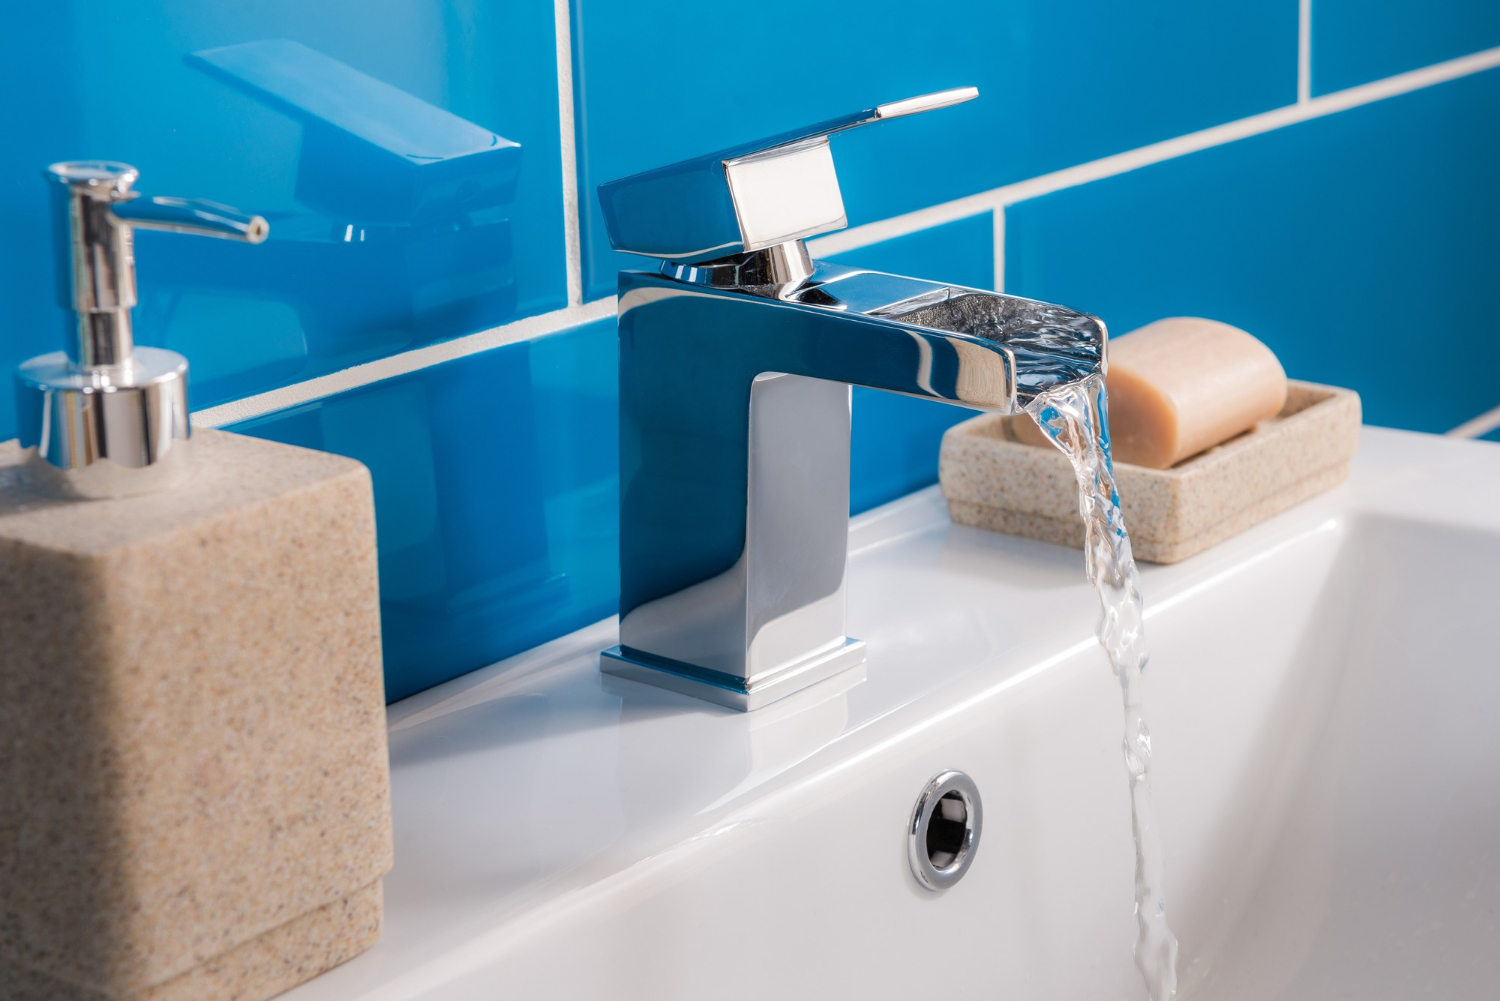 new-modern-steel-faucet-with-ceramic-sink-bathroom.jpg